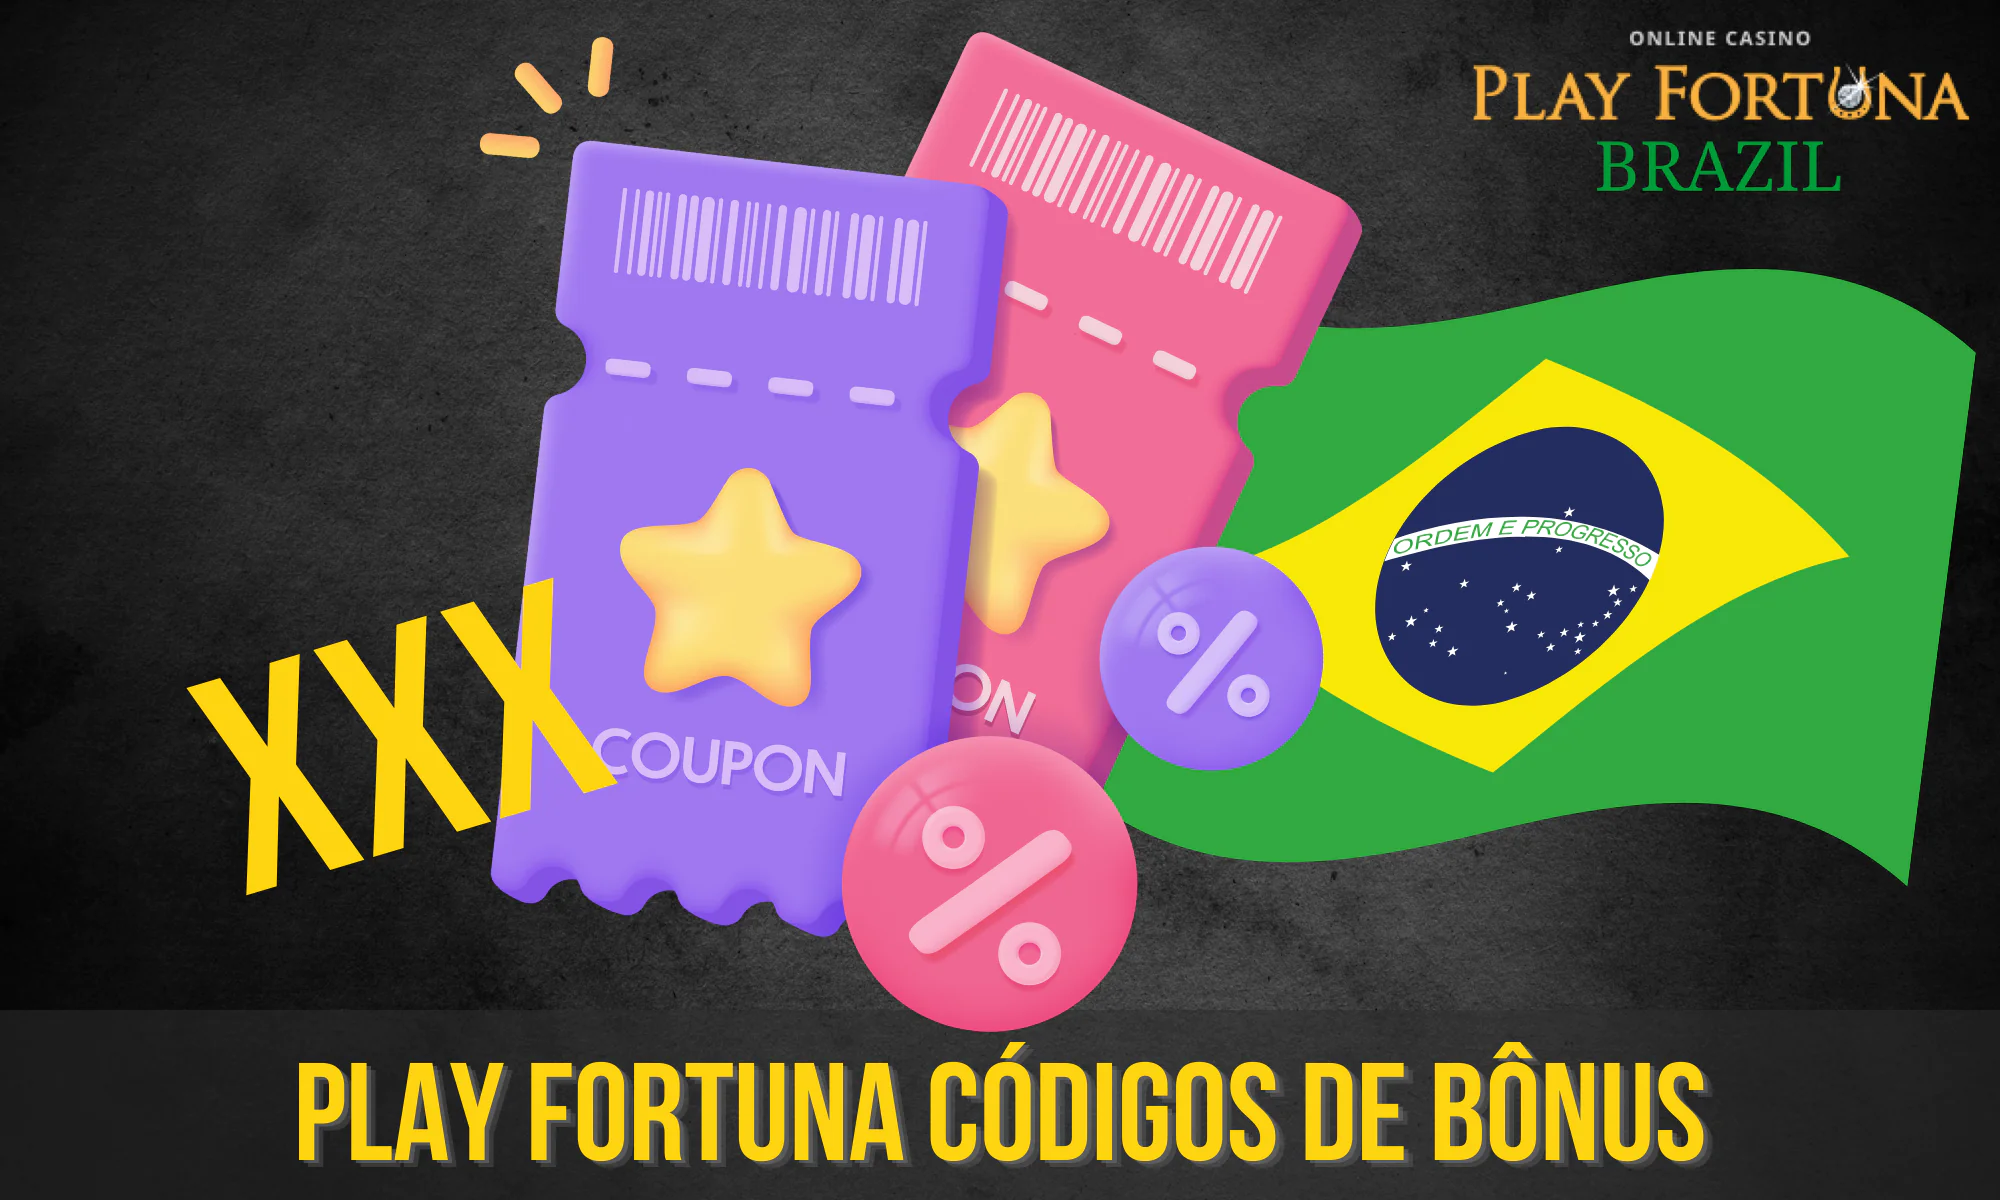 O Play Fortuna oferece aos seus jogadores regulares códigos promocionais de bônus especiais